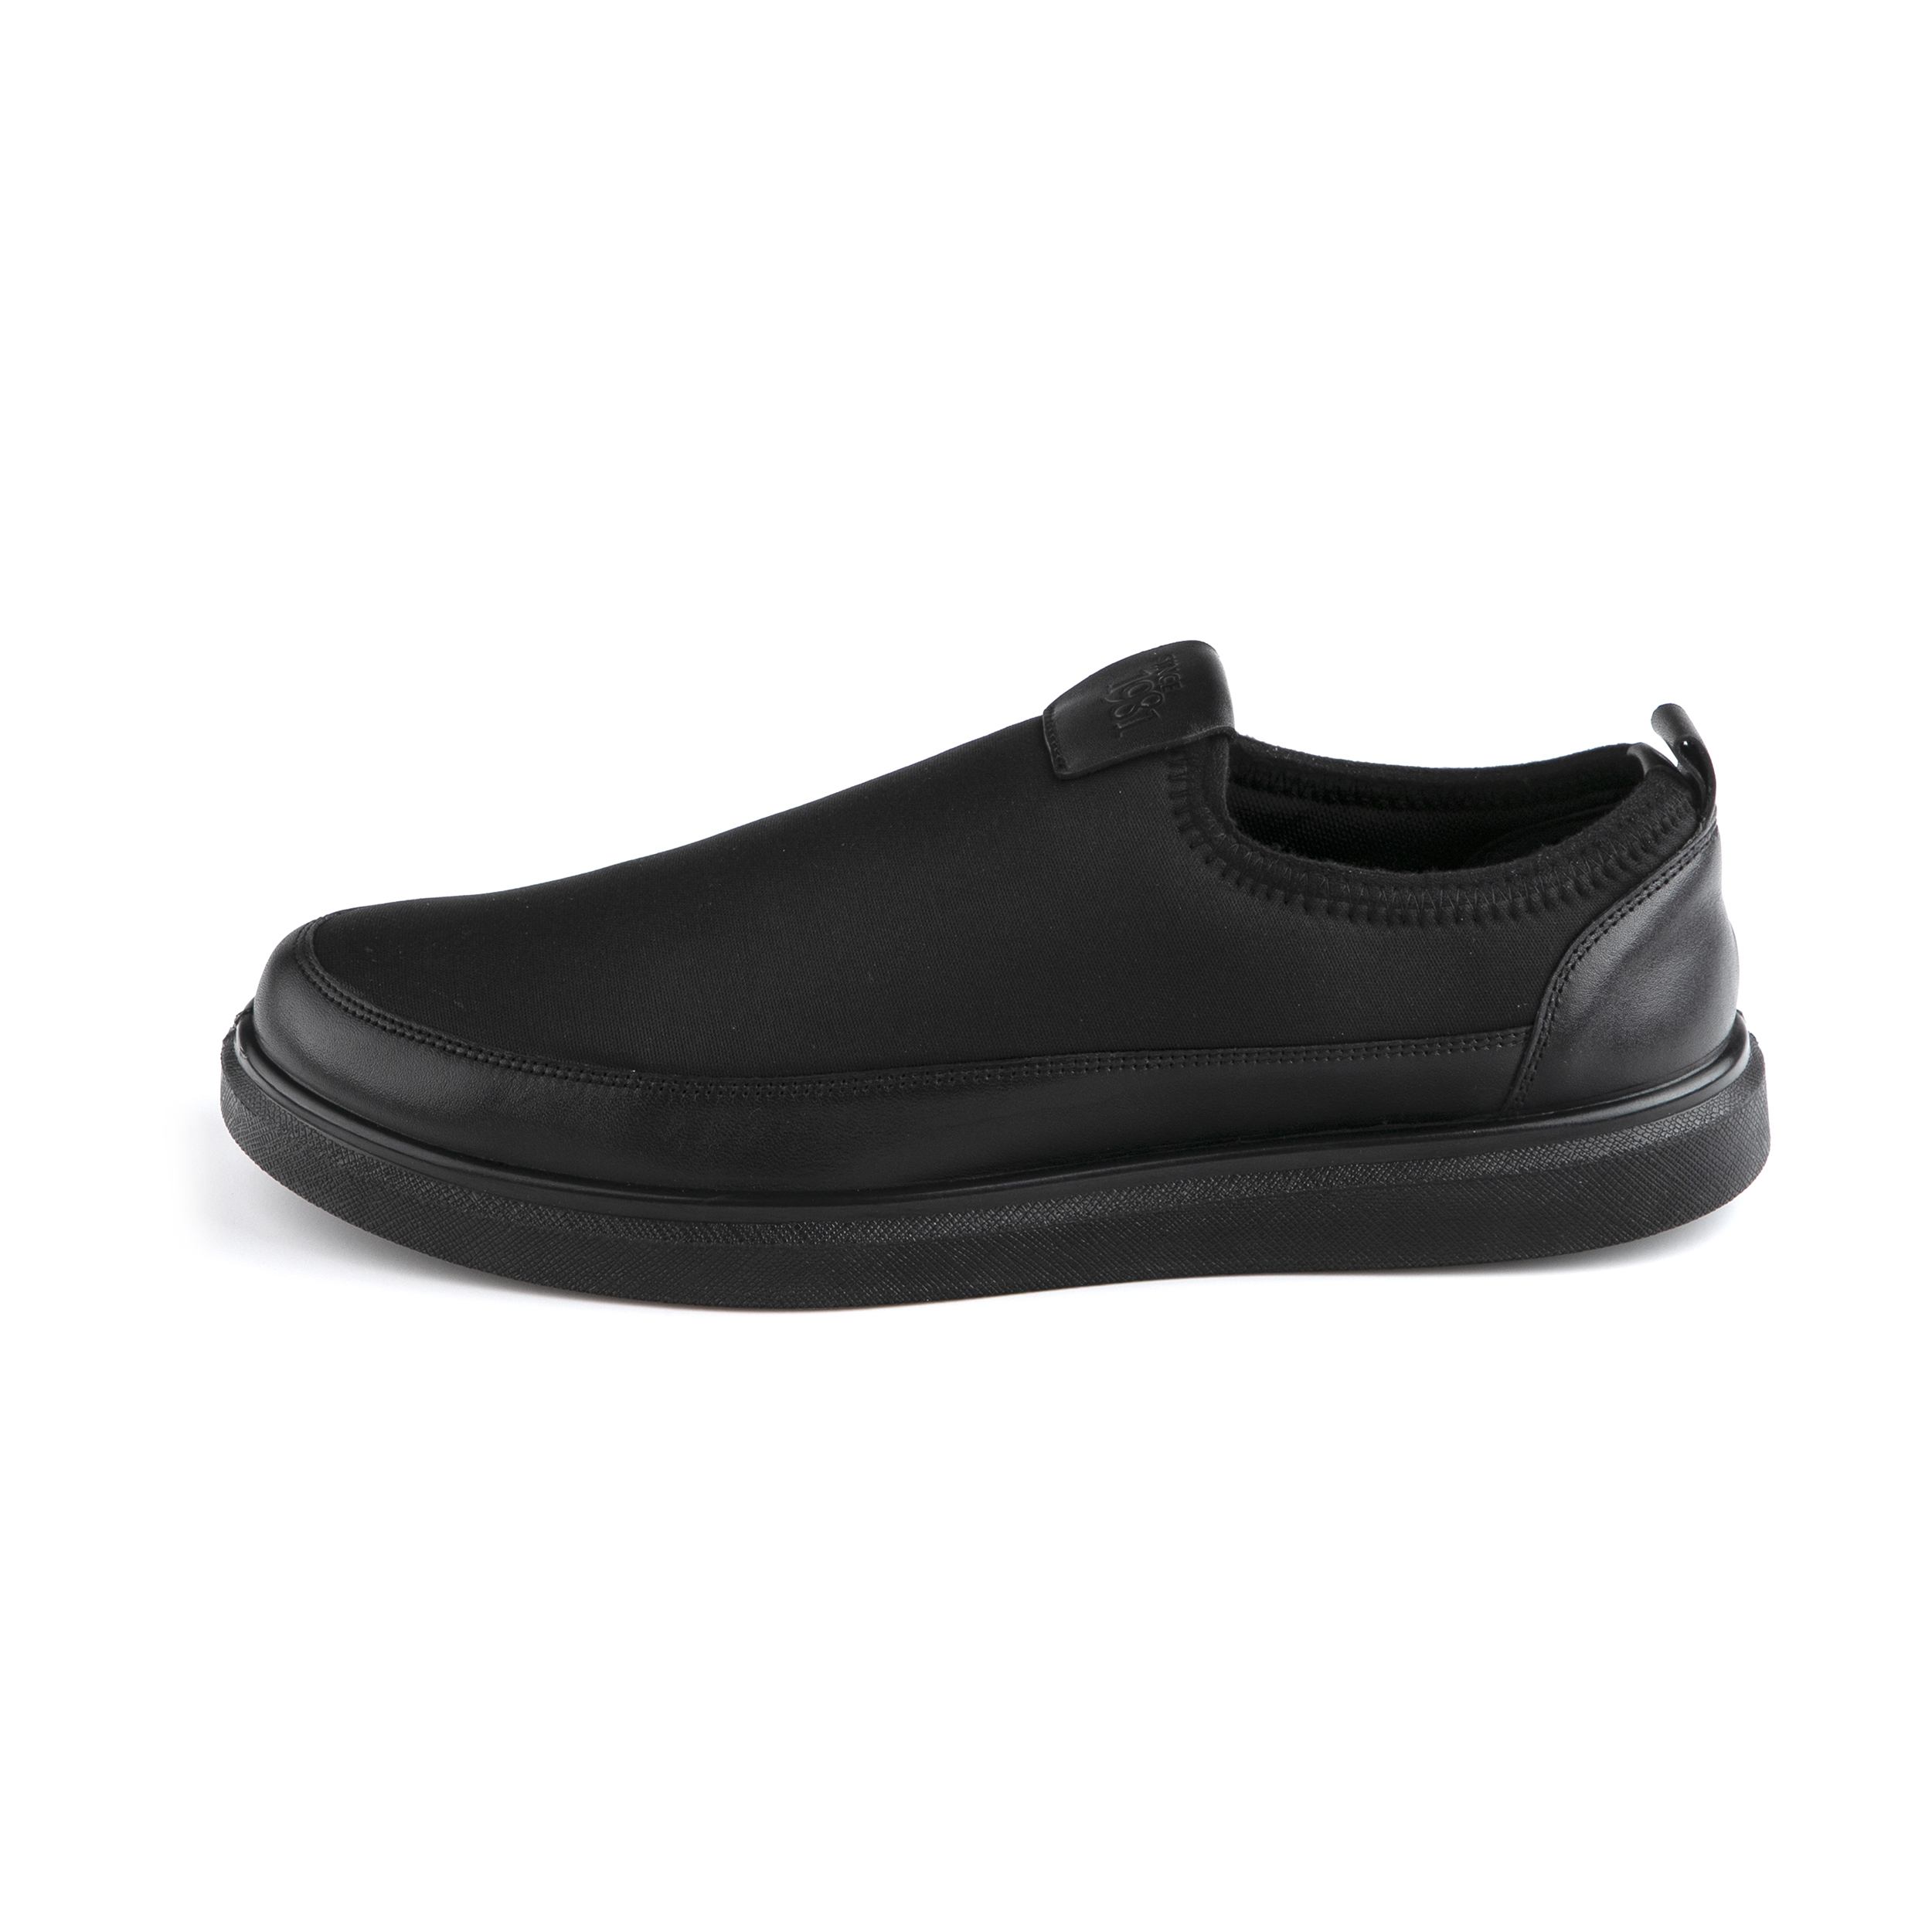  کفش روزمره مردانه دنیلی مدل Ariom-206110526026